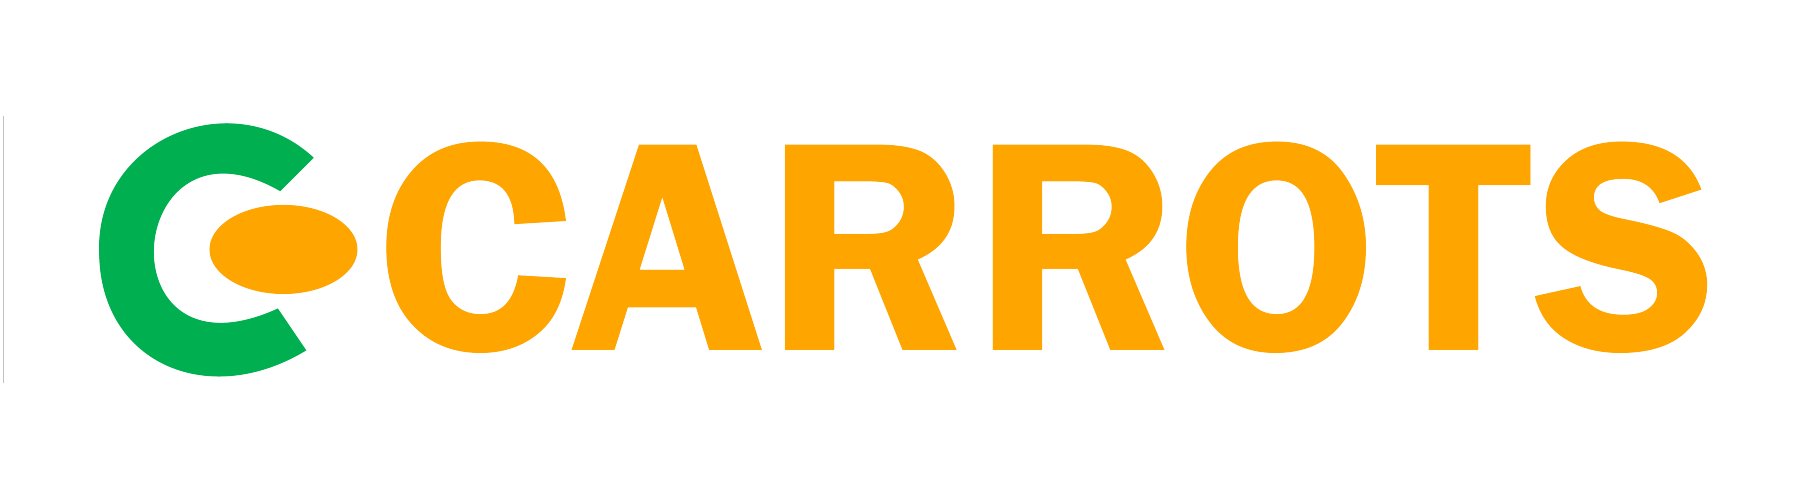 Carrots-logo